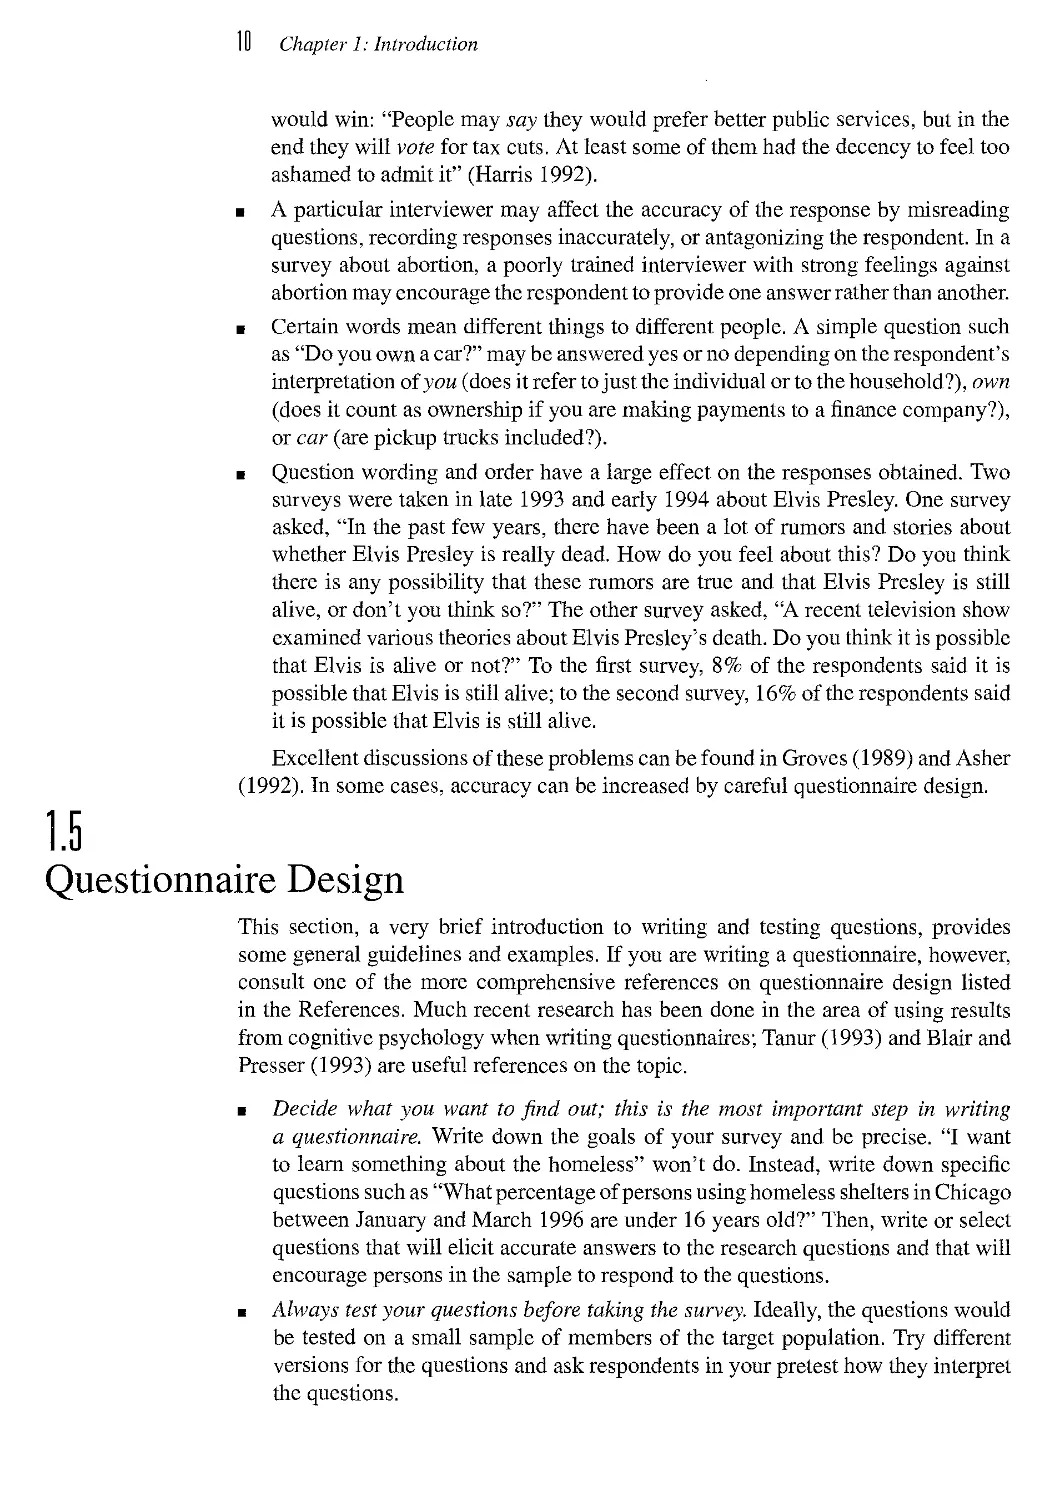 1.5 Questionnaire Design